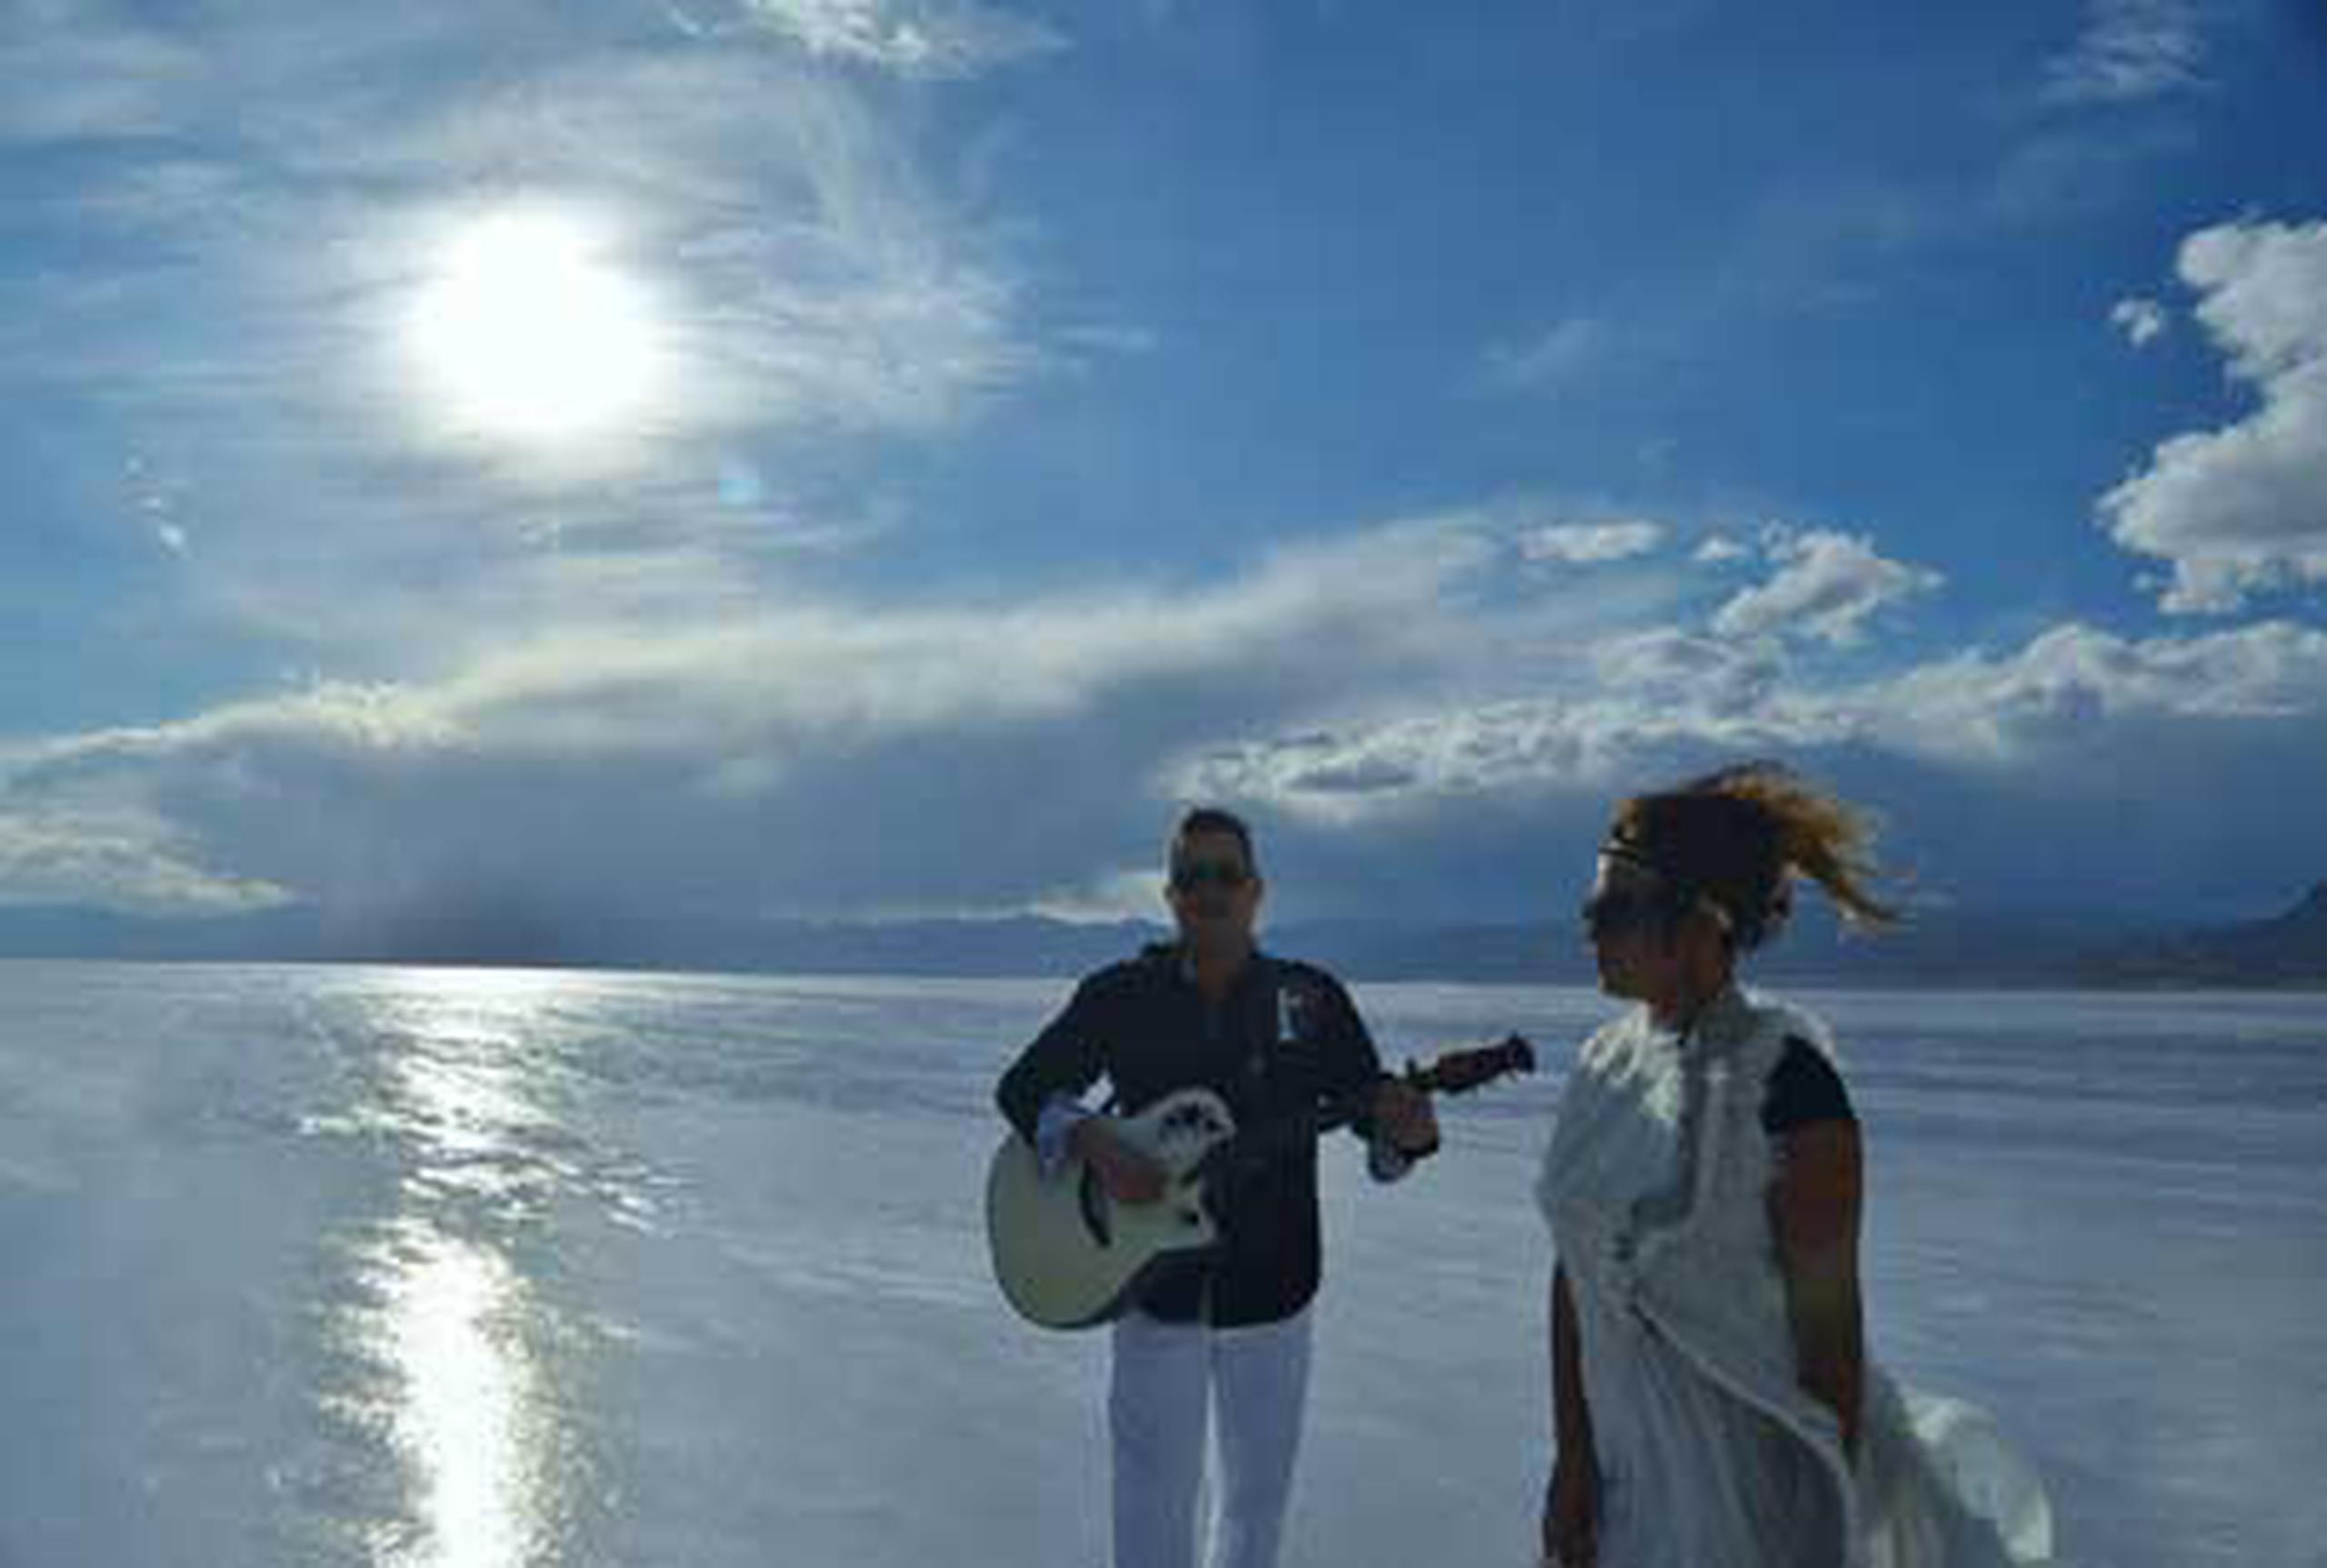 Samuel Hernández y Melodie Joy grabaron en Salt Lake City, Utah, parte del vídeo. (Suministrada)